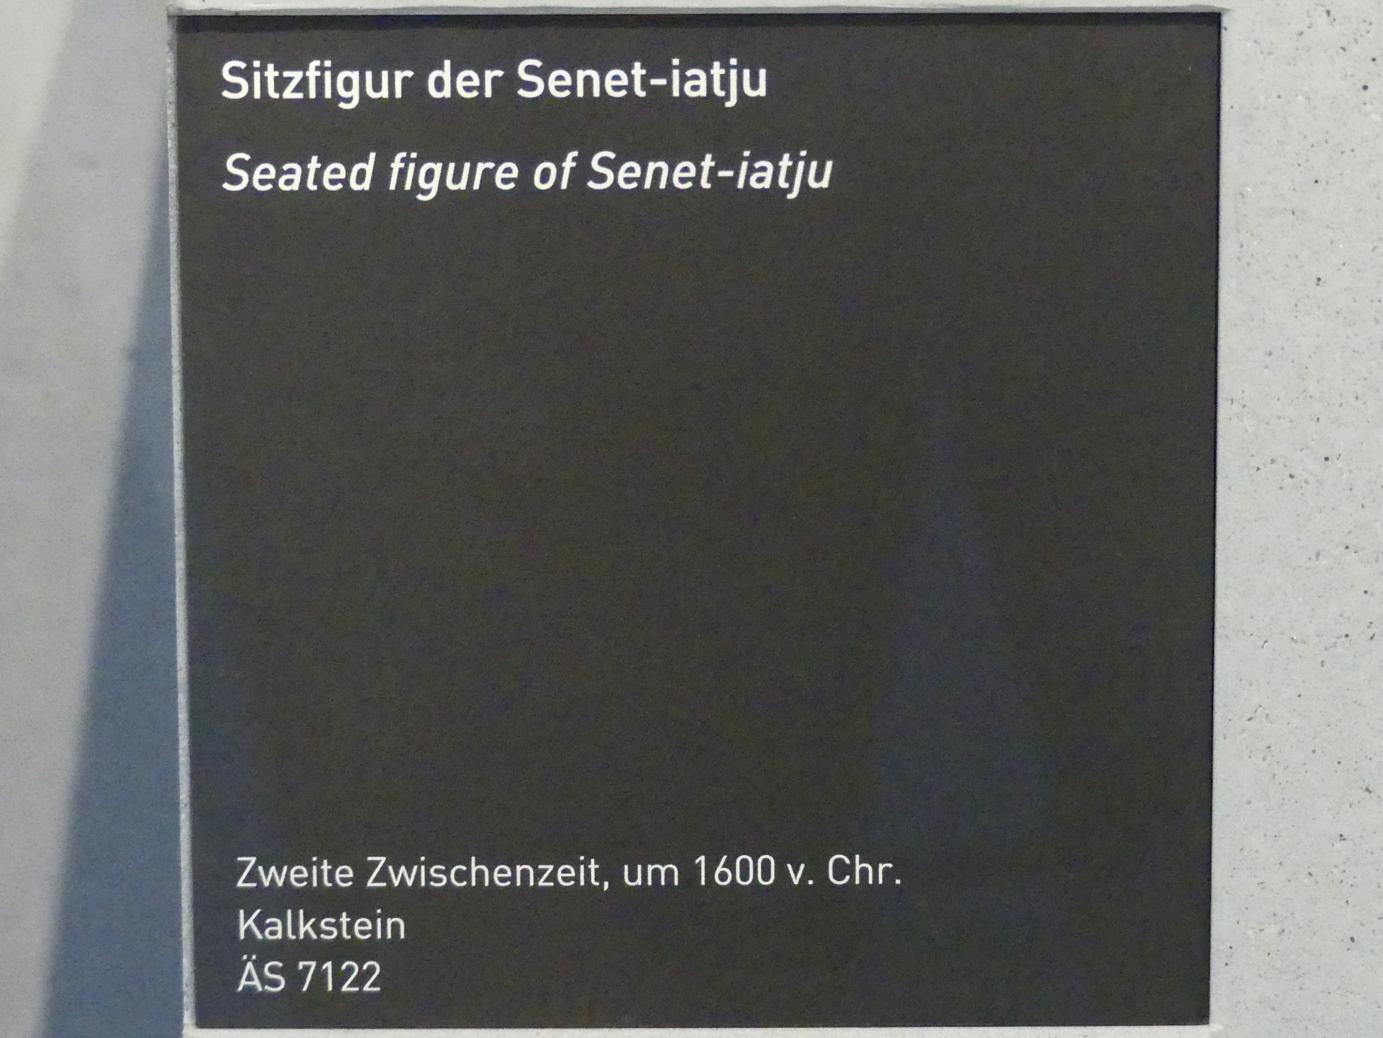 Sitzfigur der Senet-iatju, 2. Zwischenzeit, Undatiert, 1600 v. Chr., Bild 4/4